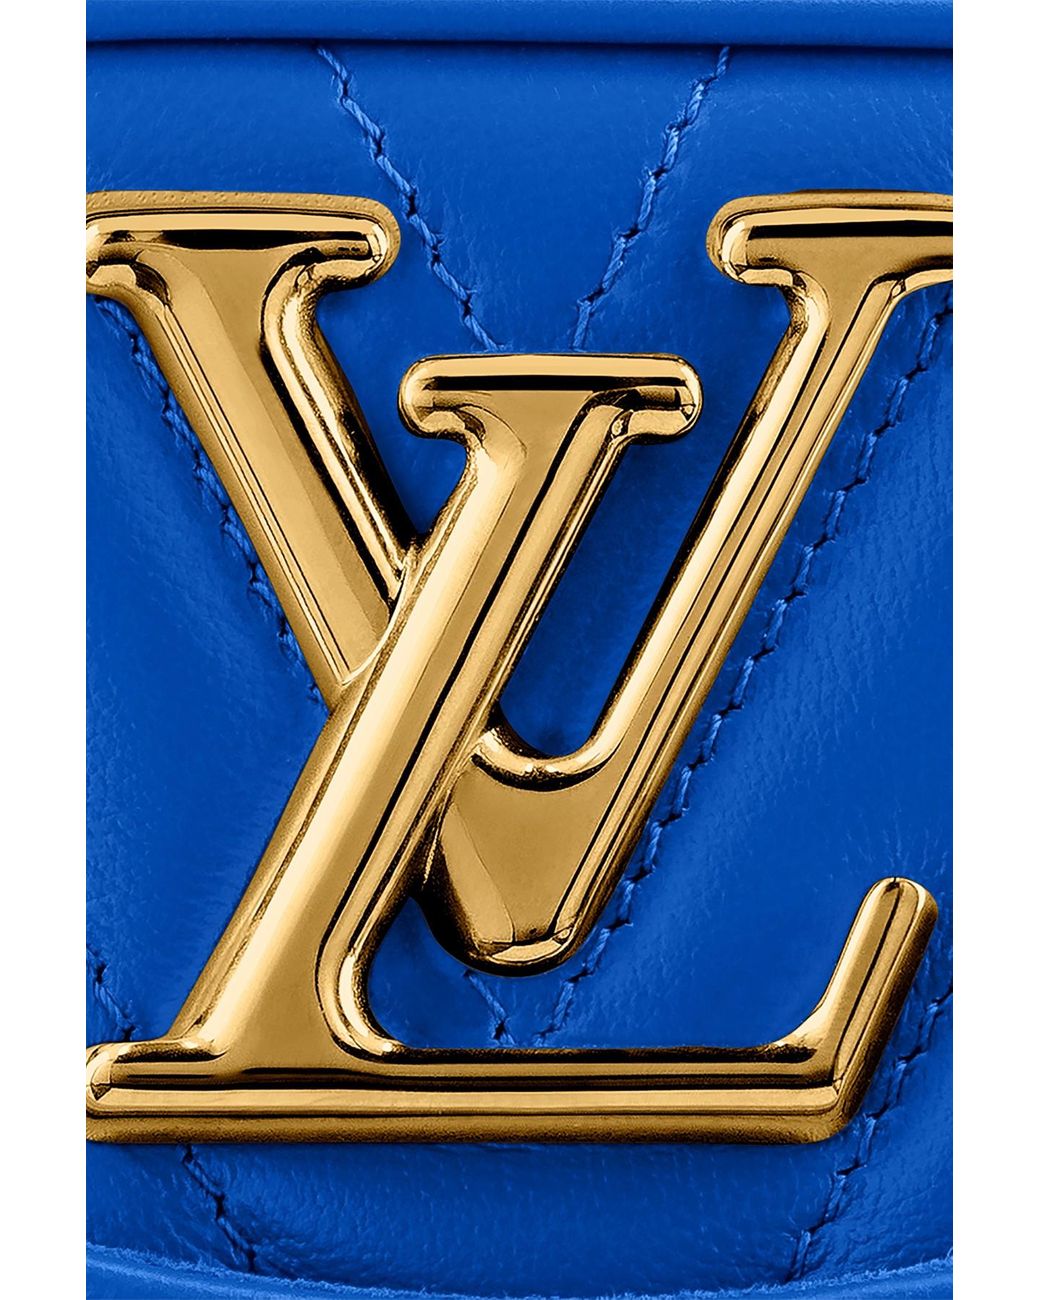 Louis Vuitton New Wave Camera Bag Bleau Navy Blue Calfskin Leather  Crossbody Handbag Unboxing 